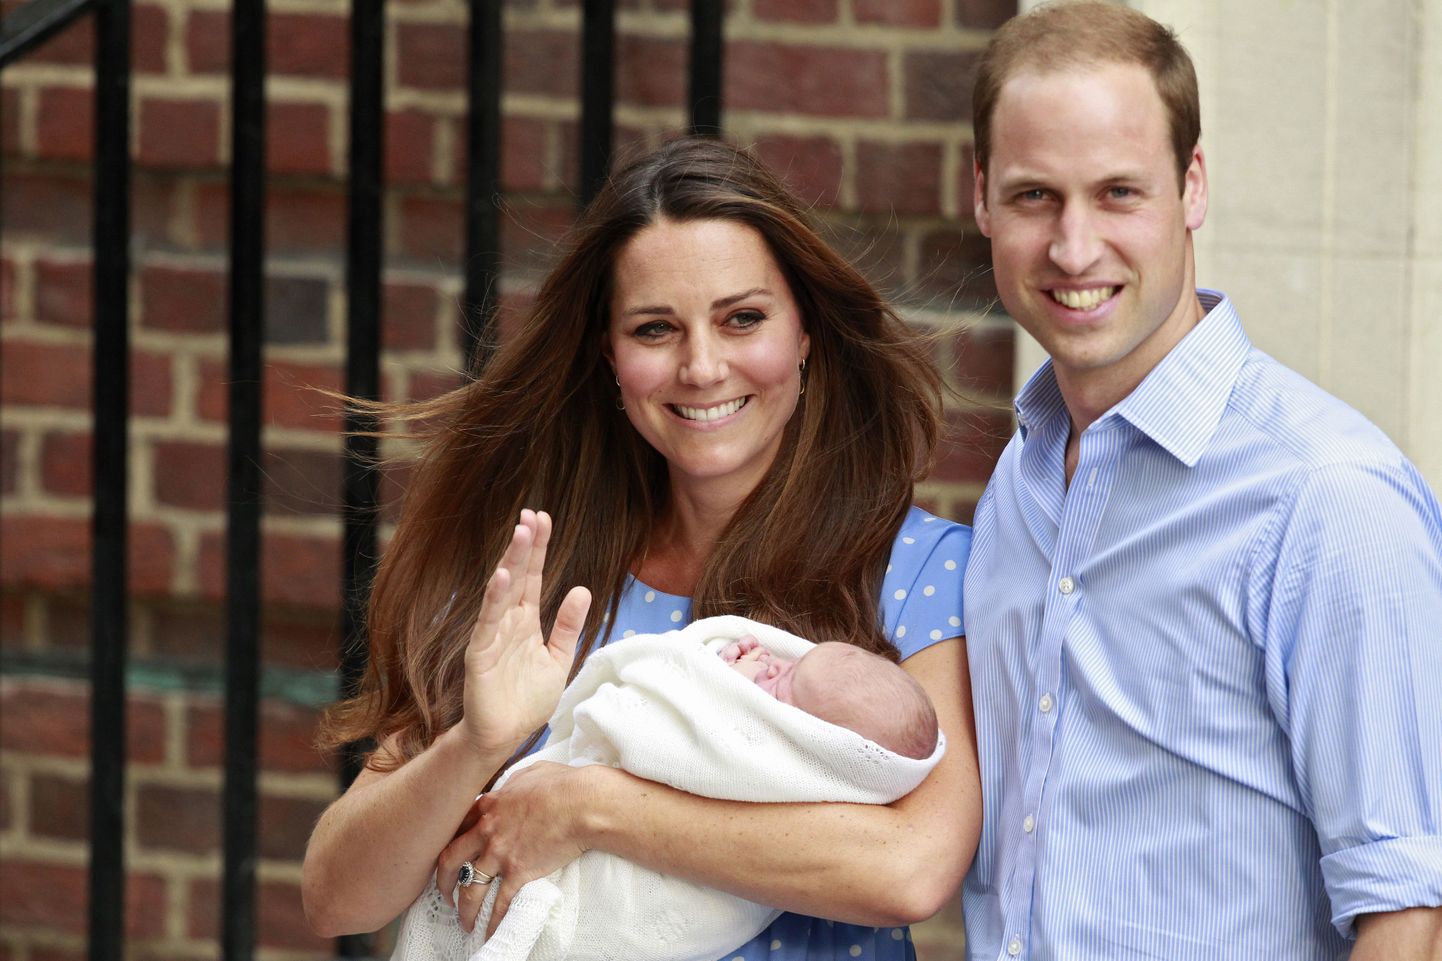 Prints William ja tema naine Kate näitavad rahvale oma poega.